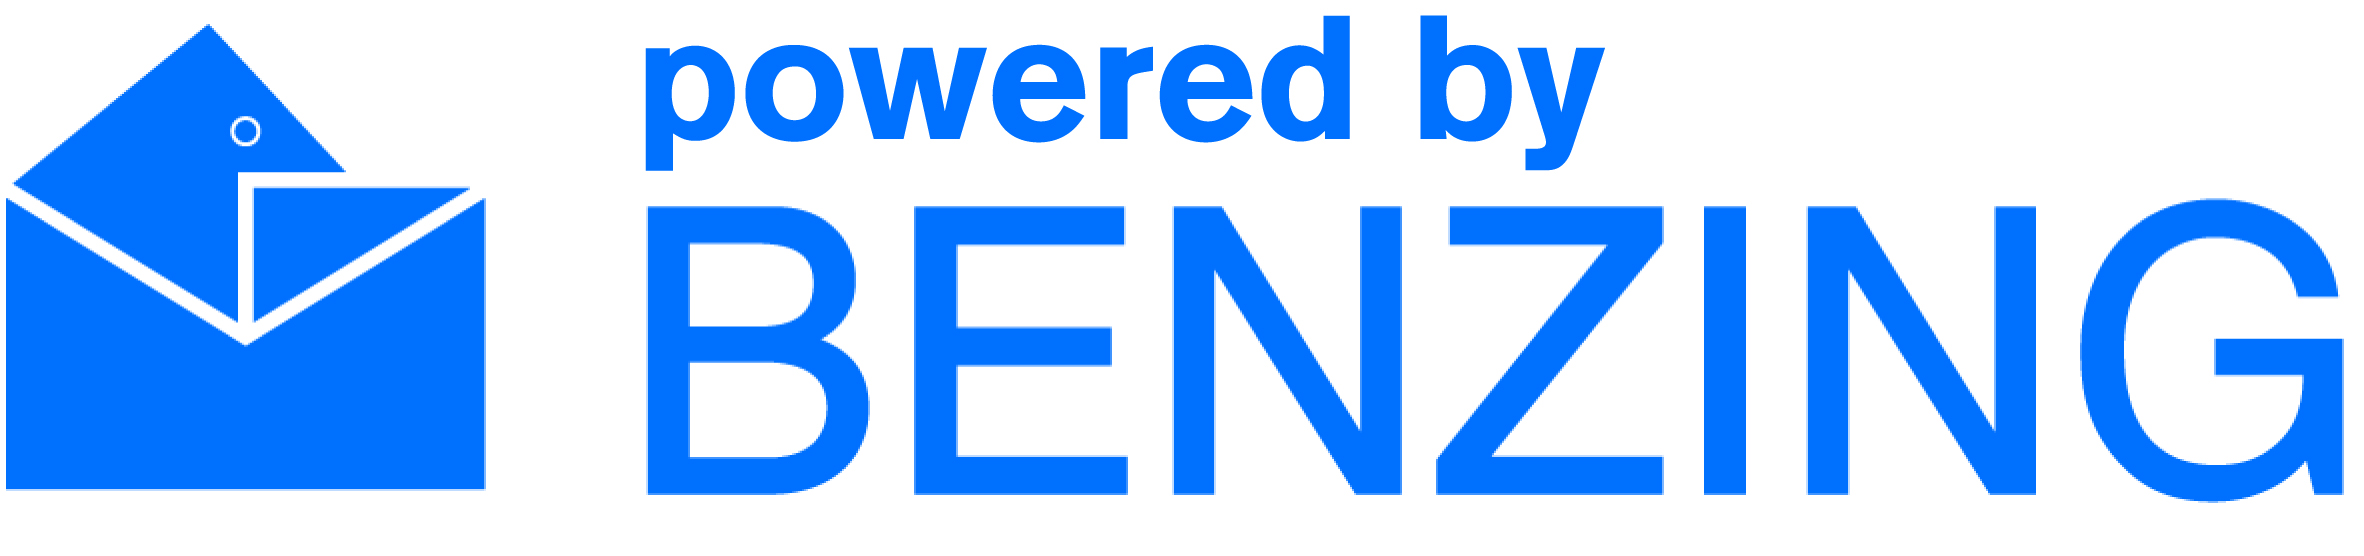 benzing logo